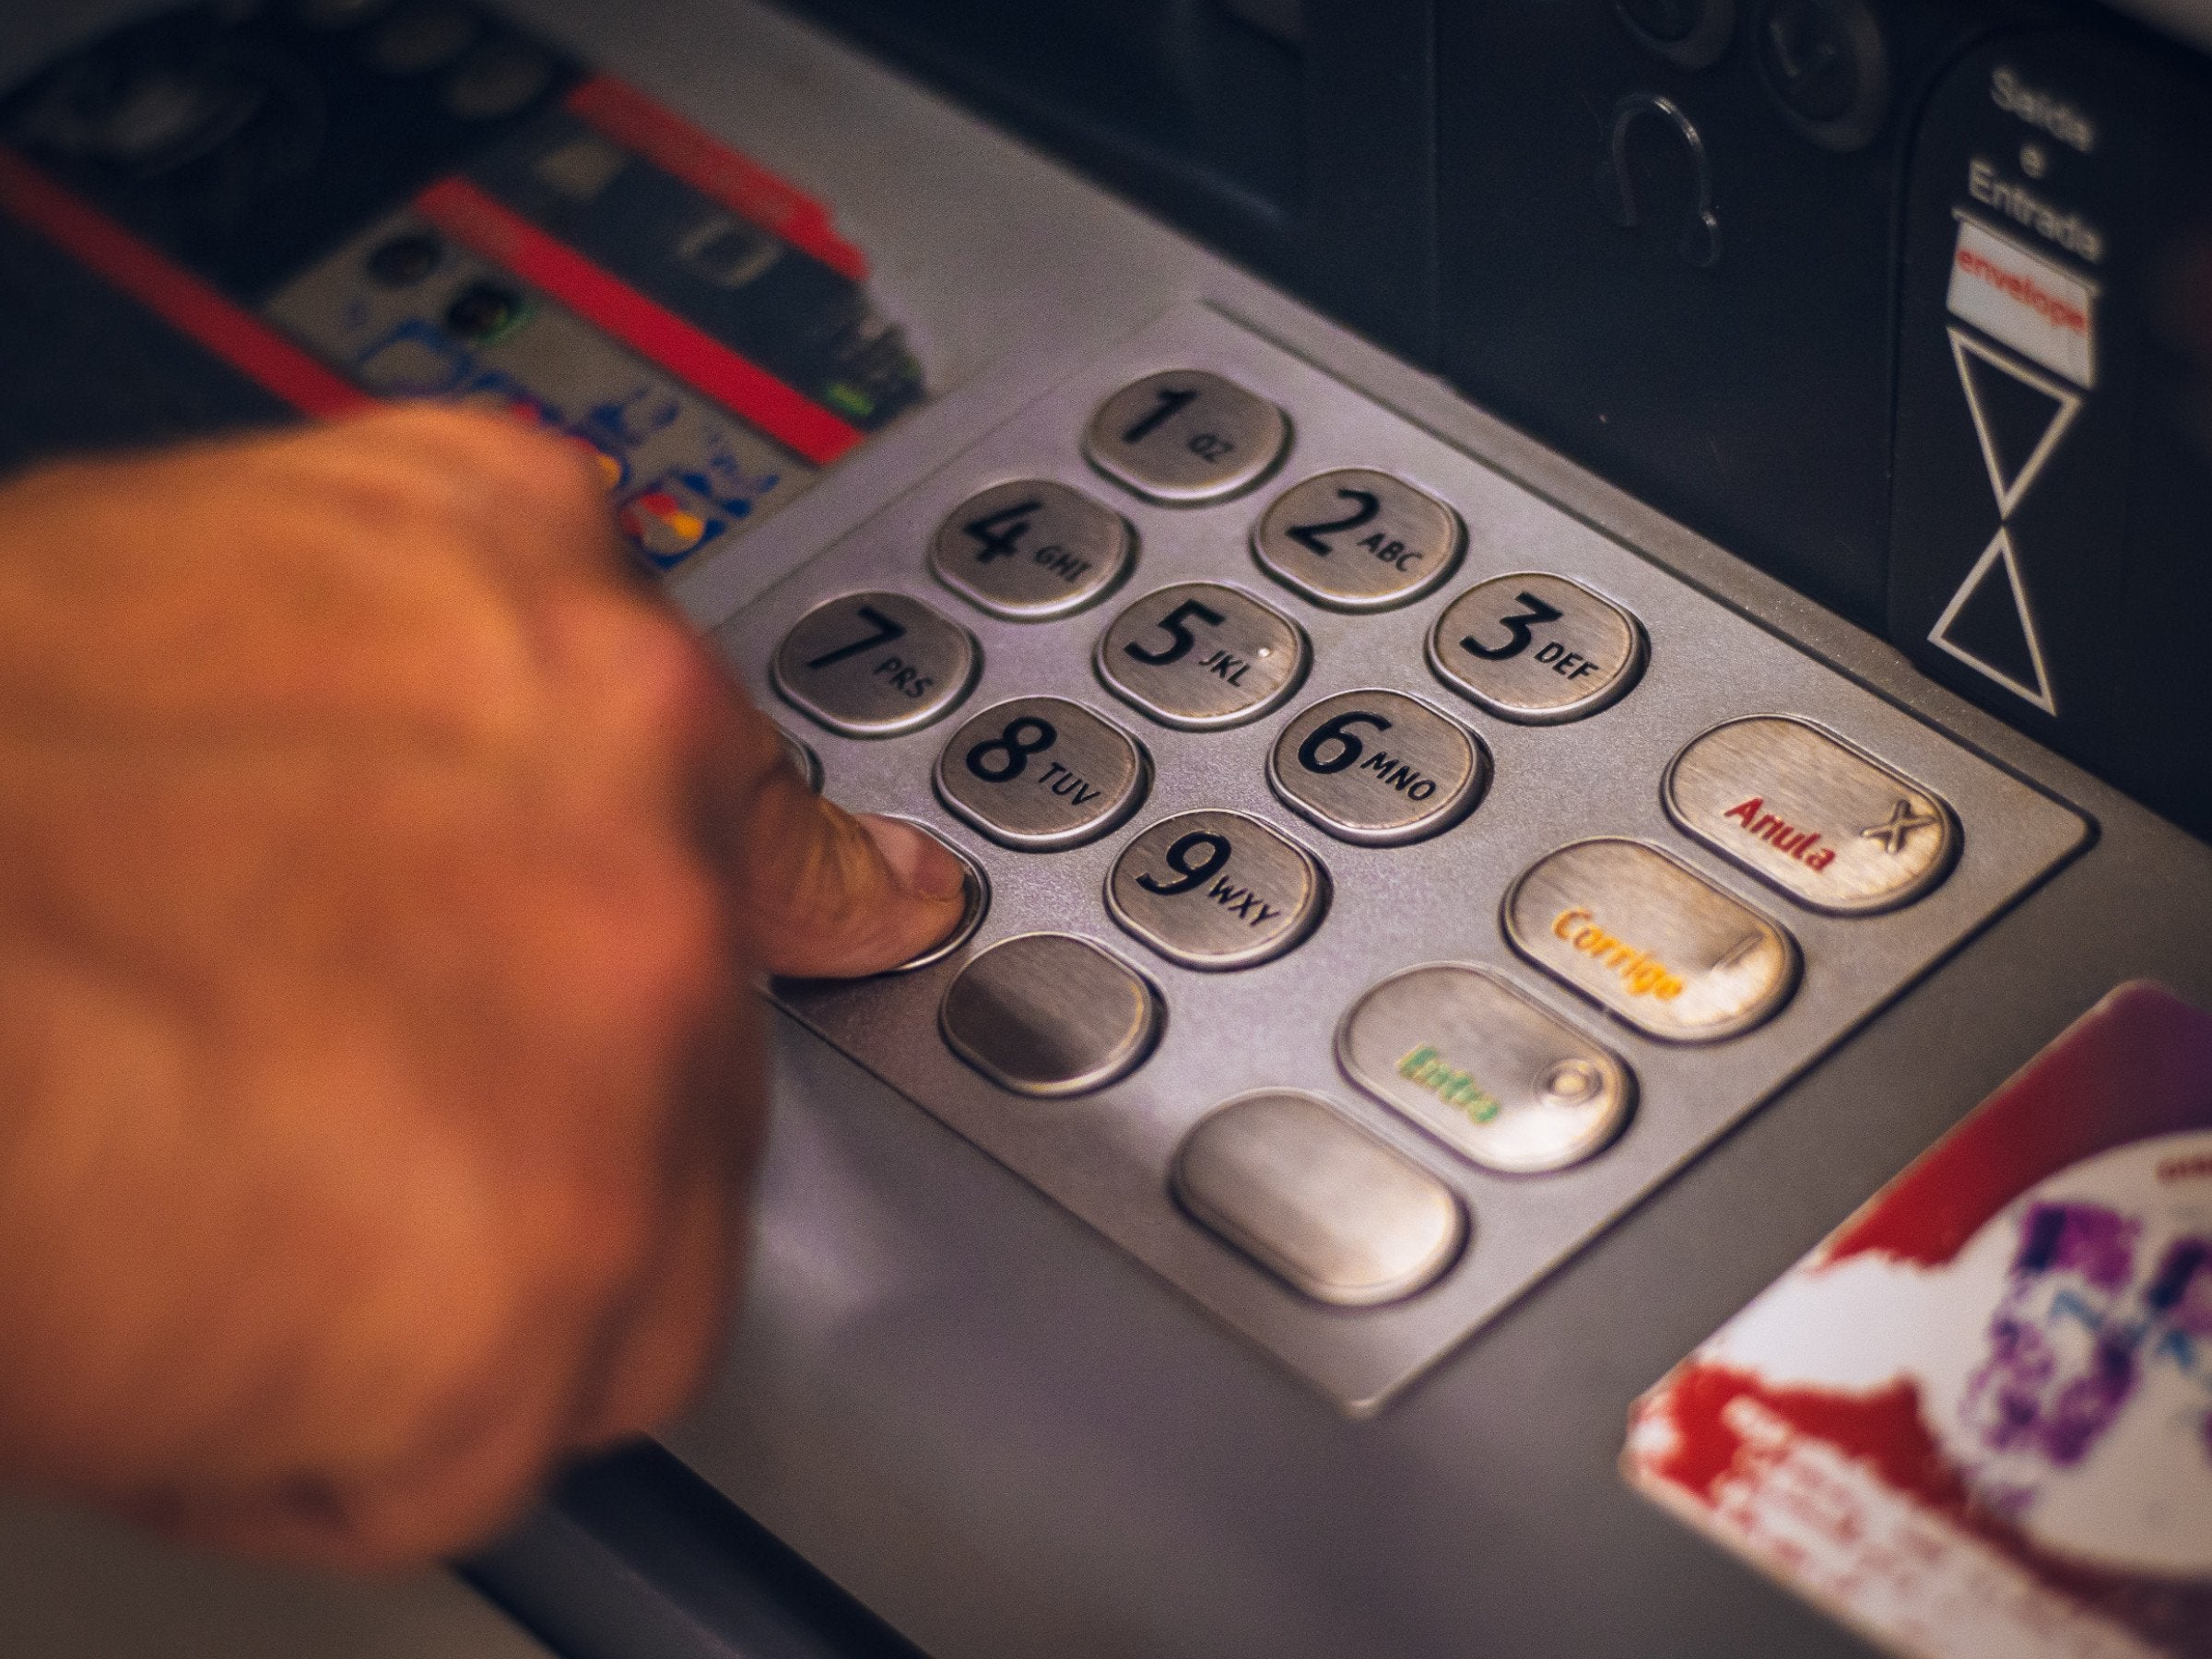 #Sparkasse: Beim Geld abheben am Automaten erleben Kunden eine böse Überraschung